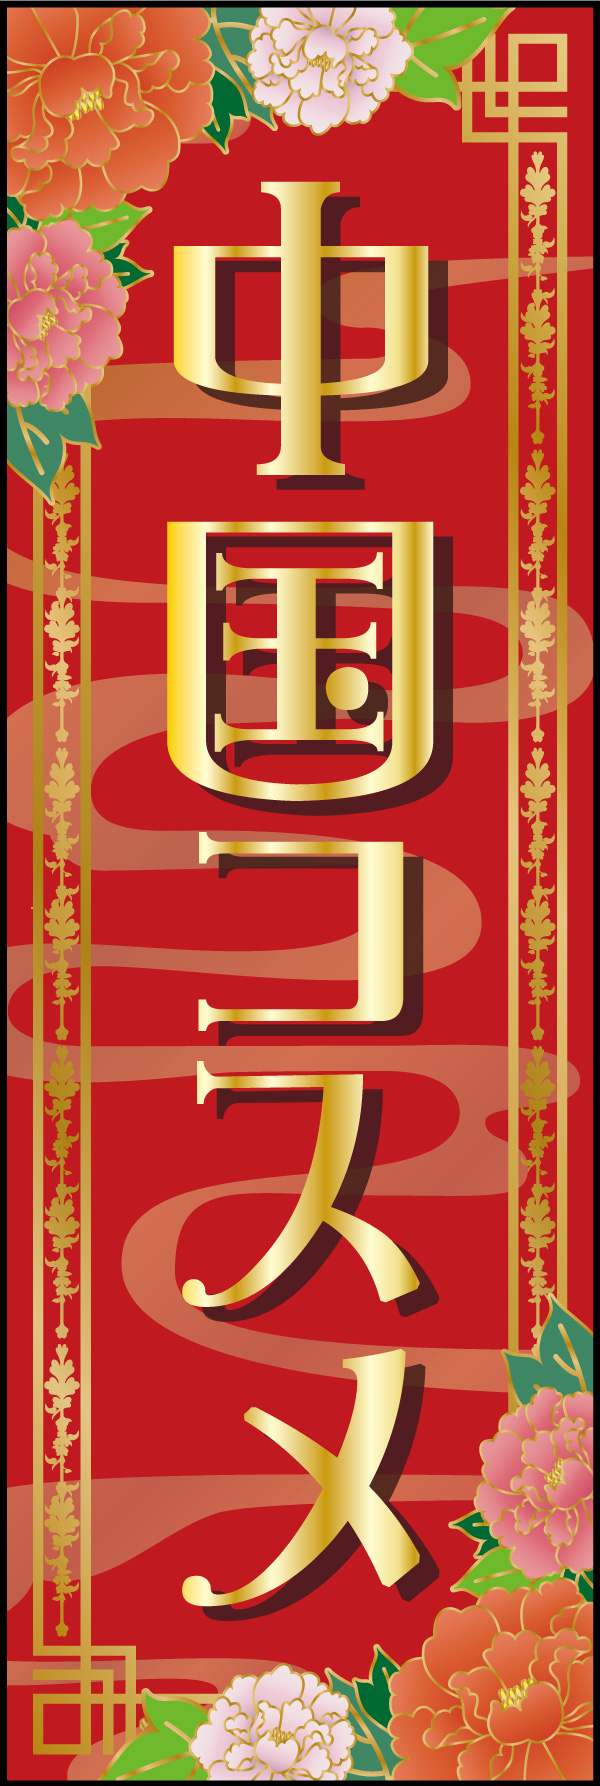 中国コスメ 01 「中国コスメ 」ののぼりです。華やかさで目を引くのぼりを目指しました。(A.H)